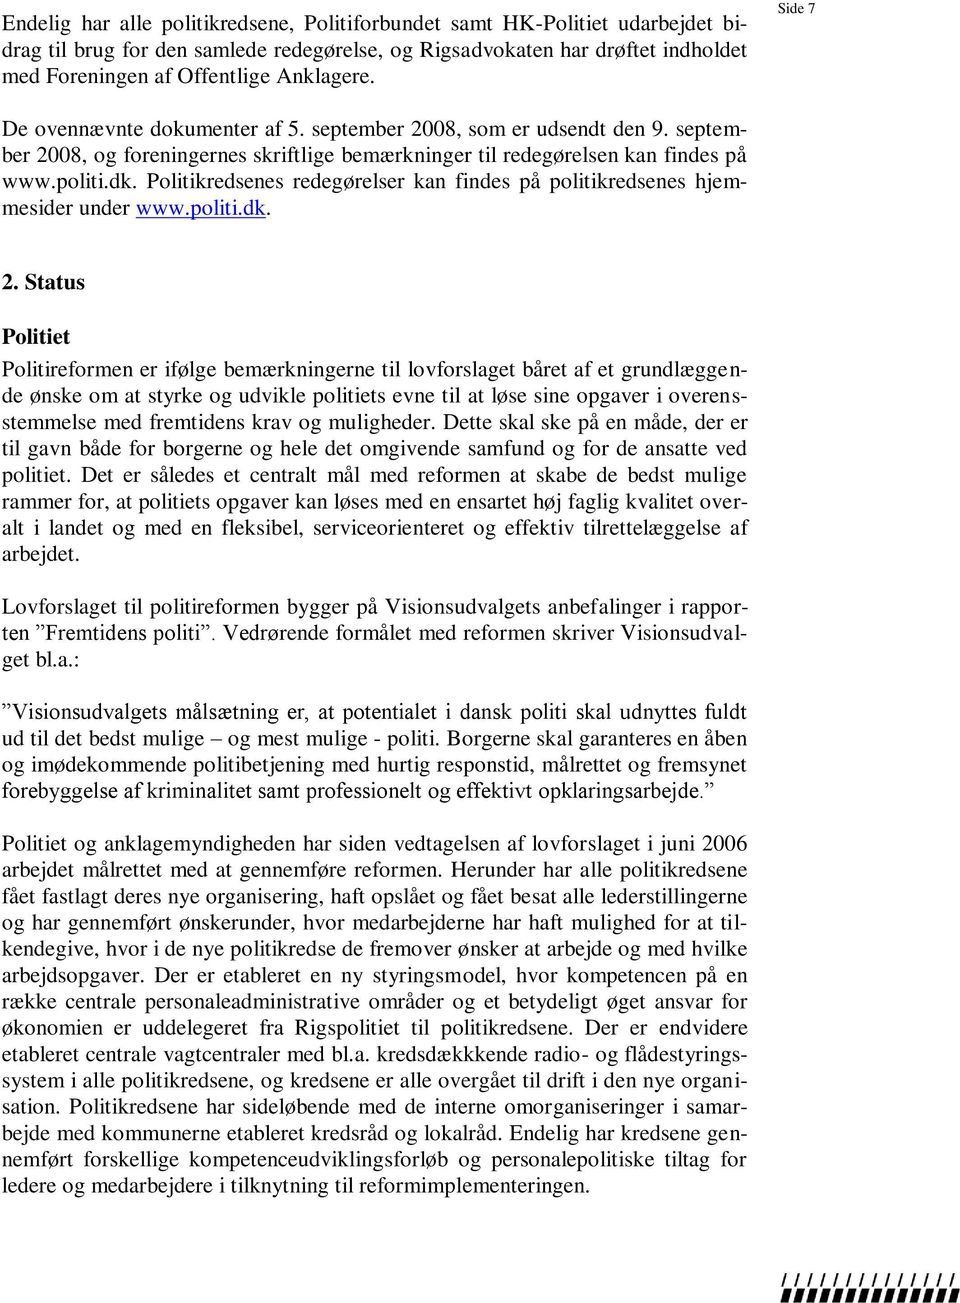 Politikredsenes redegørelser kan findes på politikredsenes hjemmesider under www.politi.dk. 2.